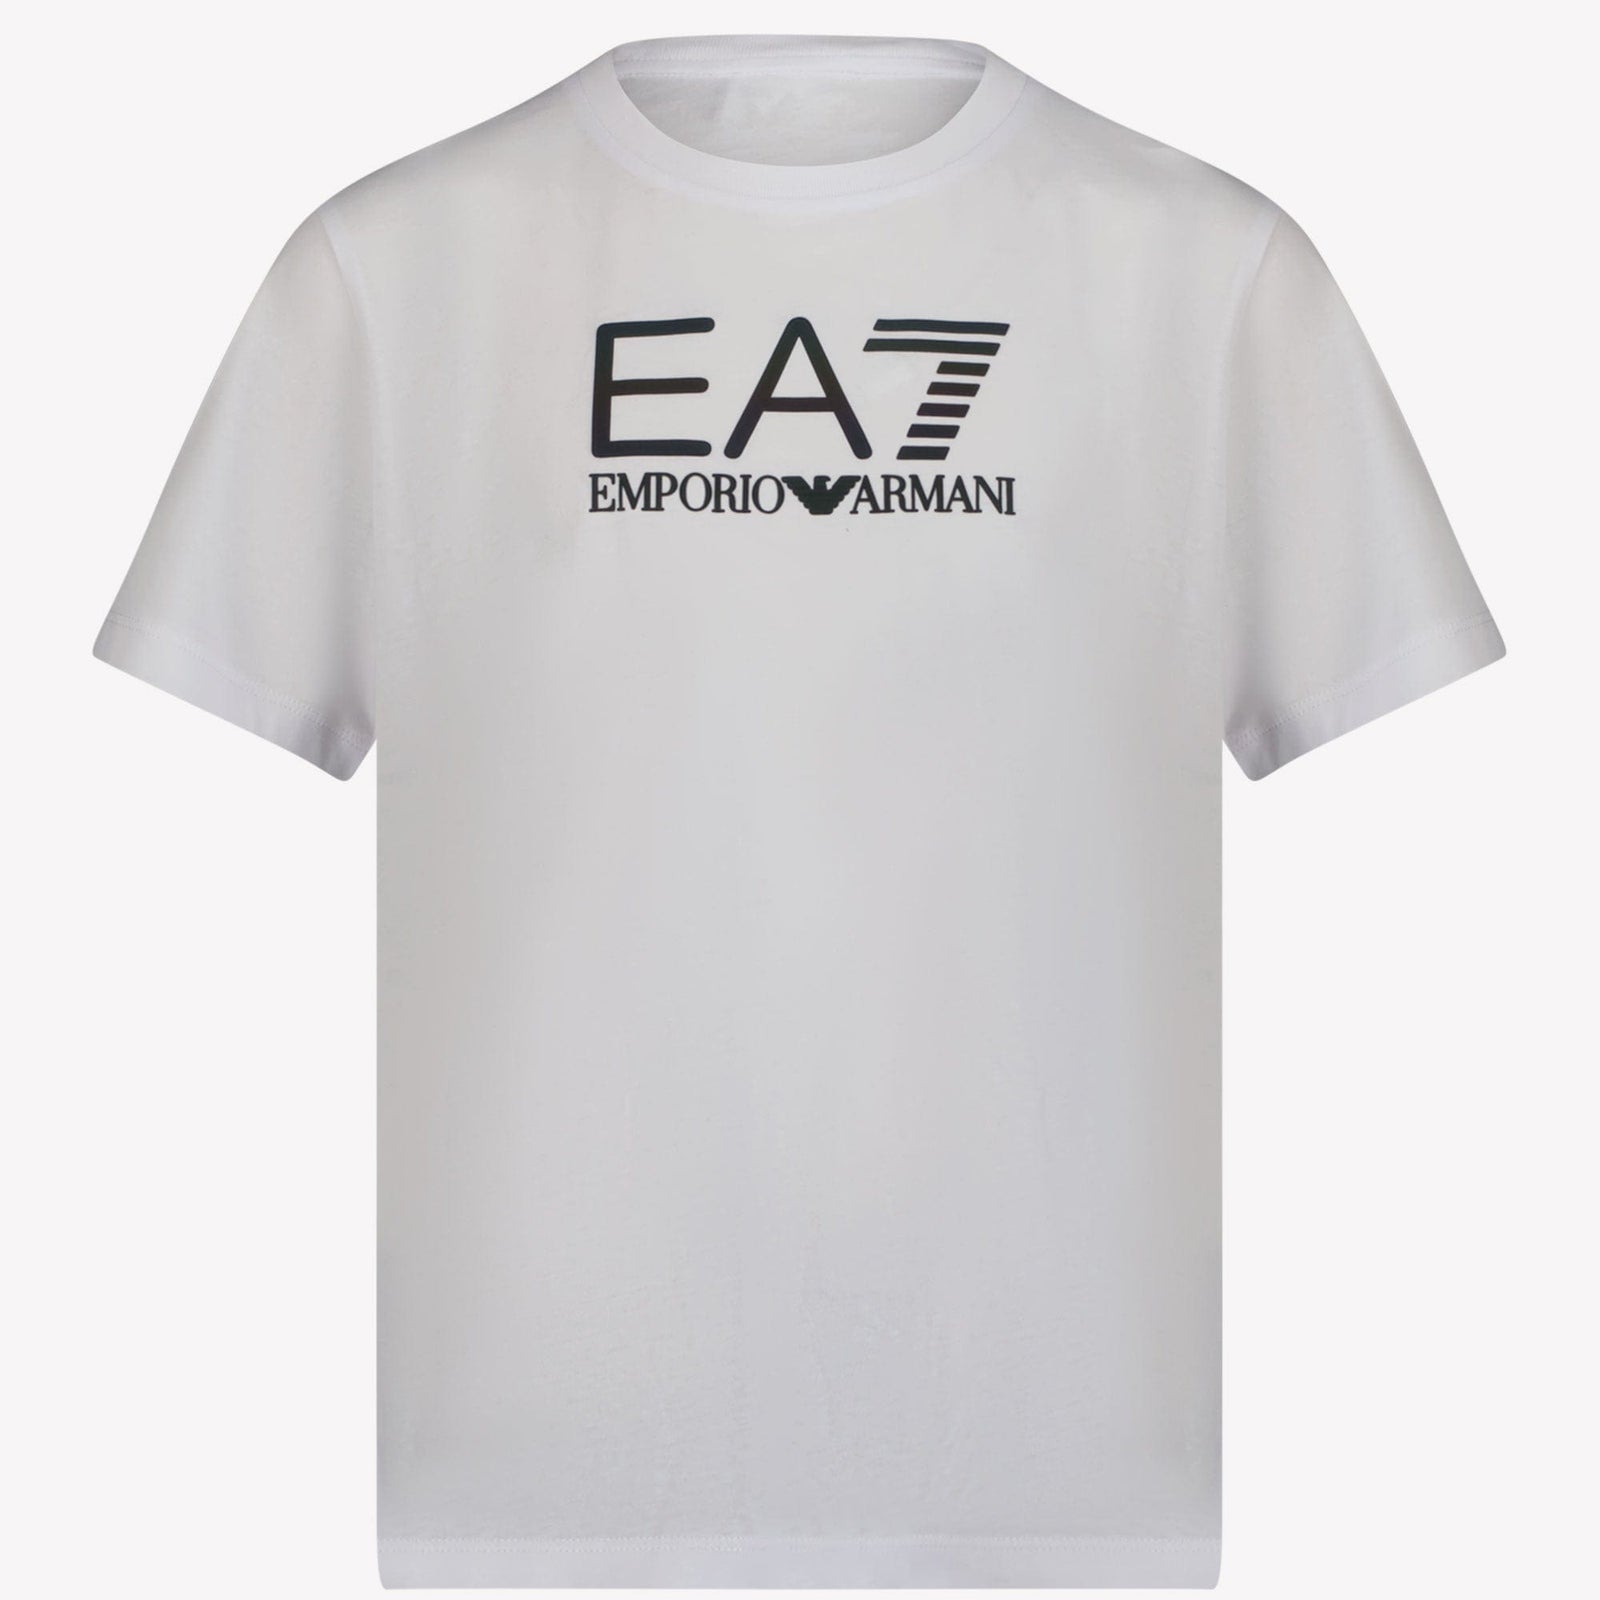 Ea7 Kinder Jongens T-shirt Wit 4Y